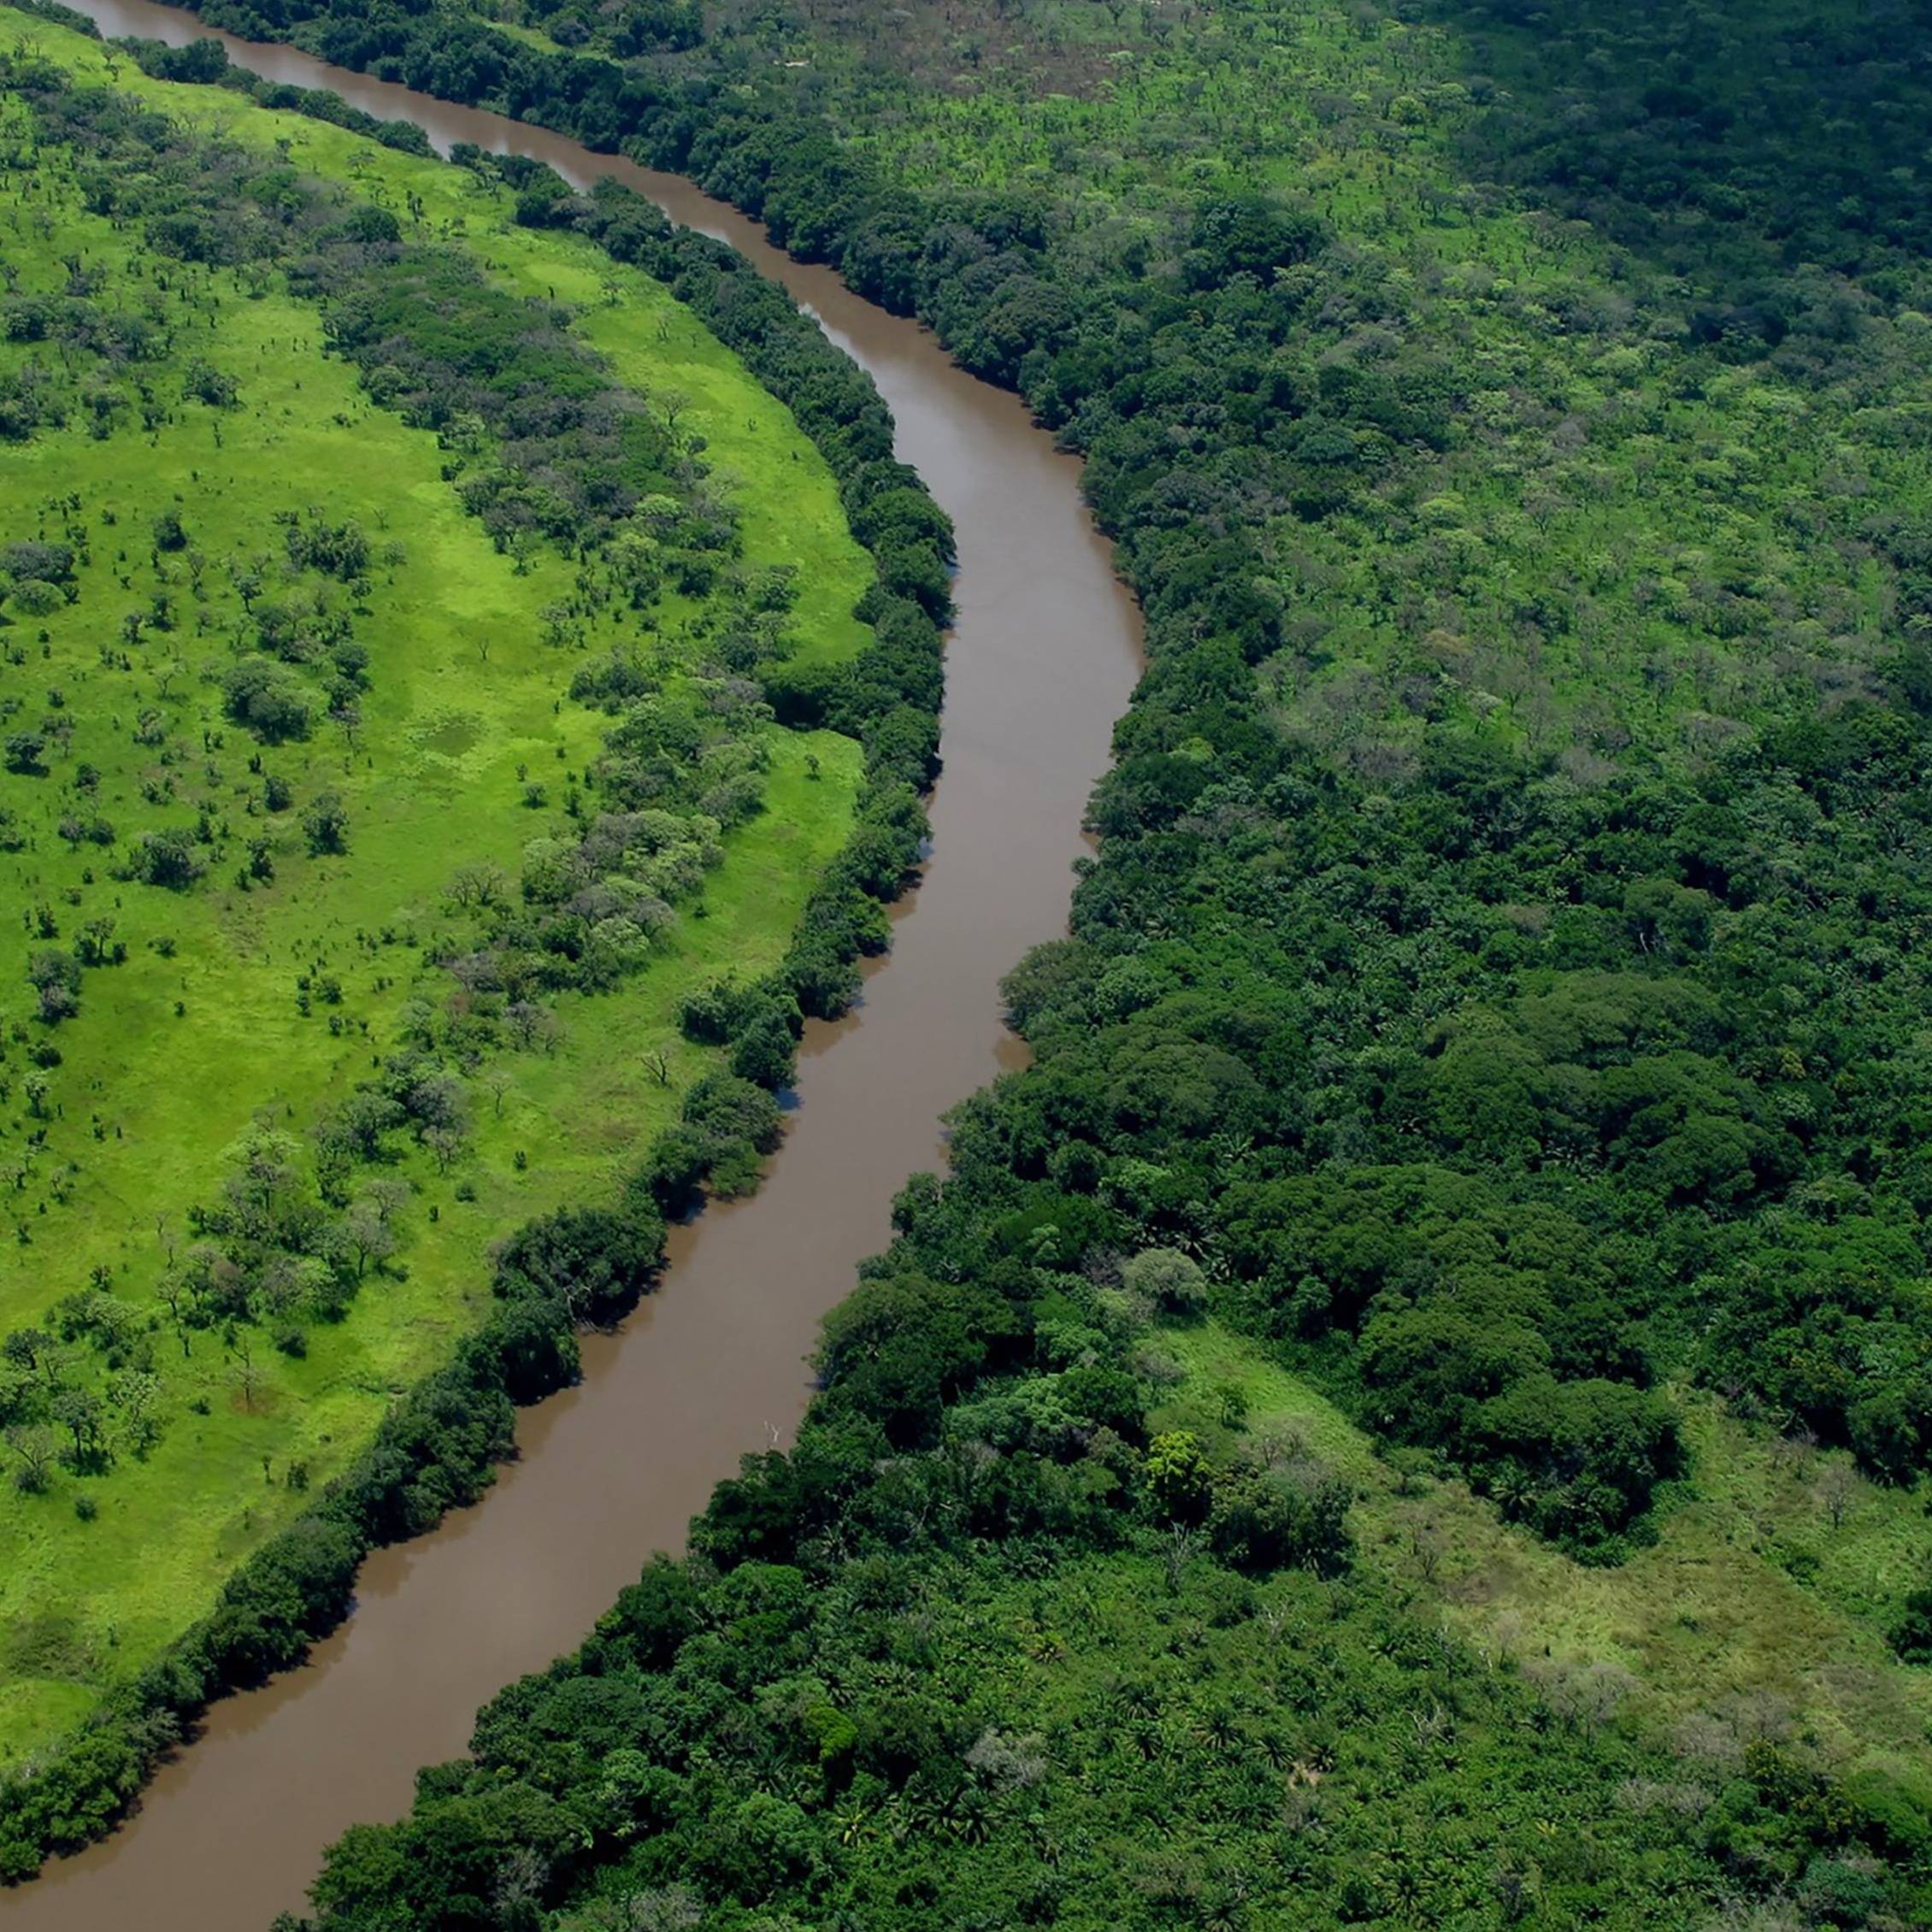 Congolese landscape